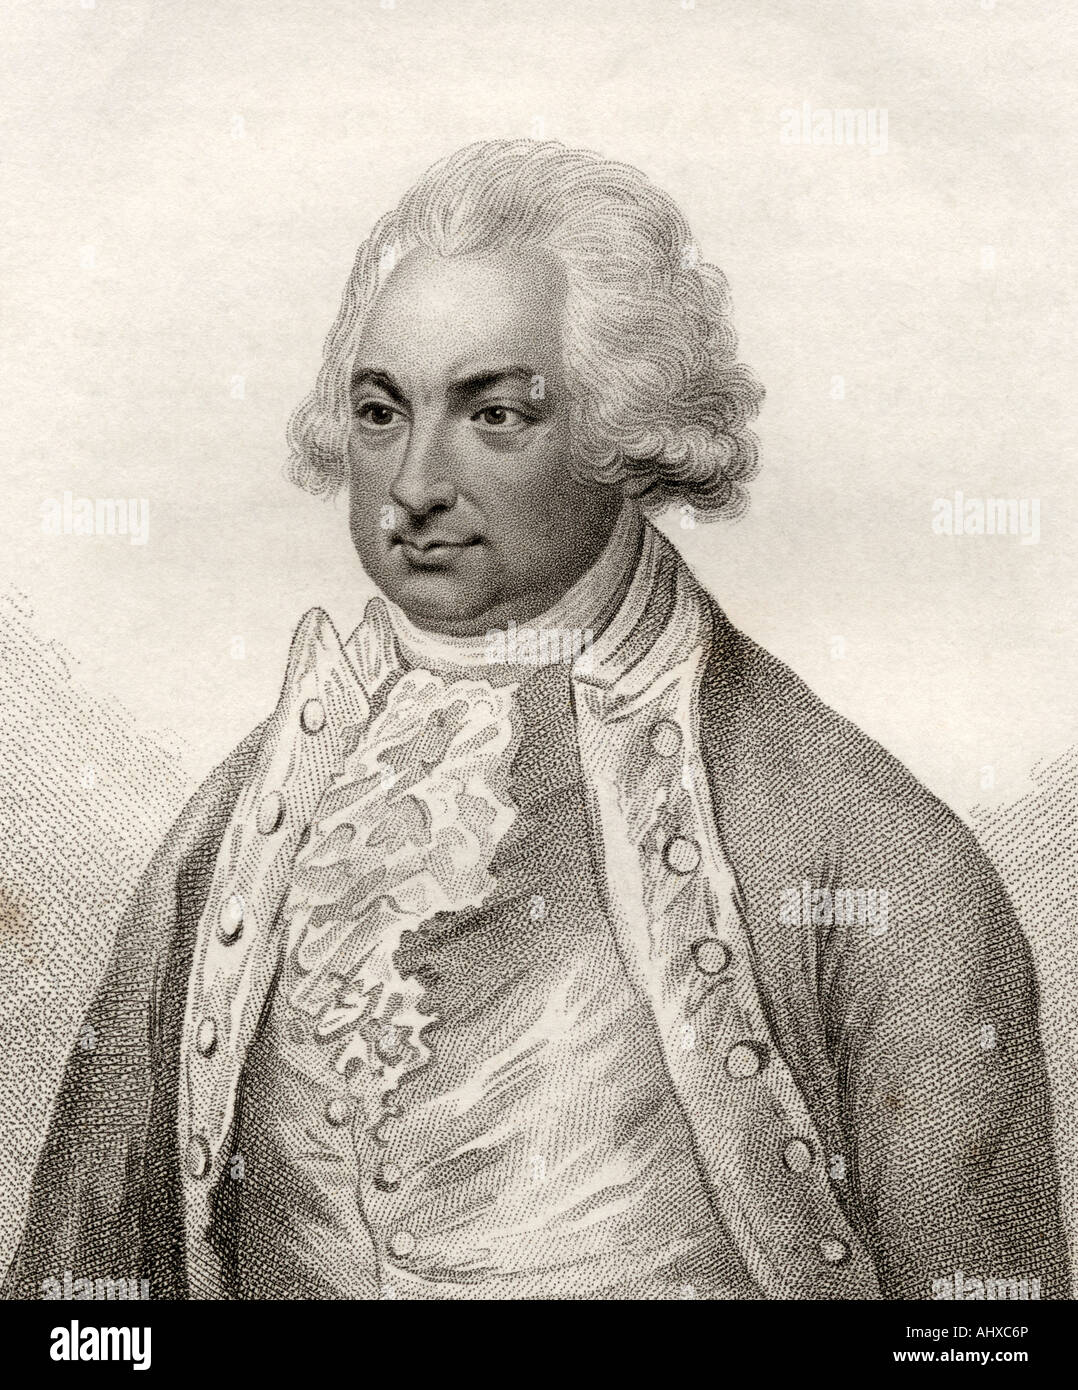 Constantine John Phipps, 2e baron Mulgrave, 1744 - 1792. explorateur anglais Banque D'Images